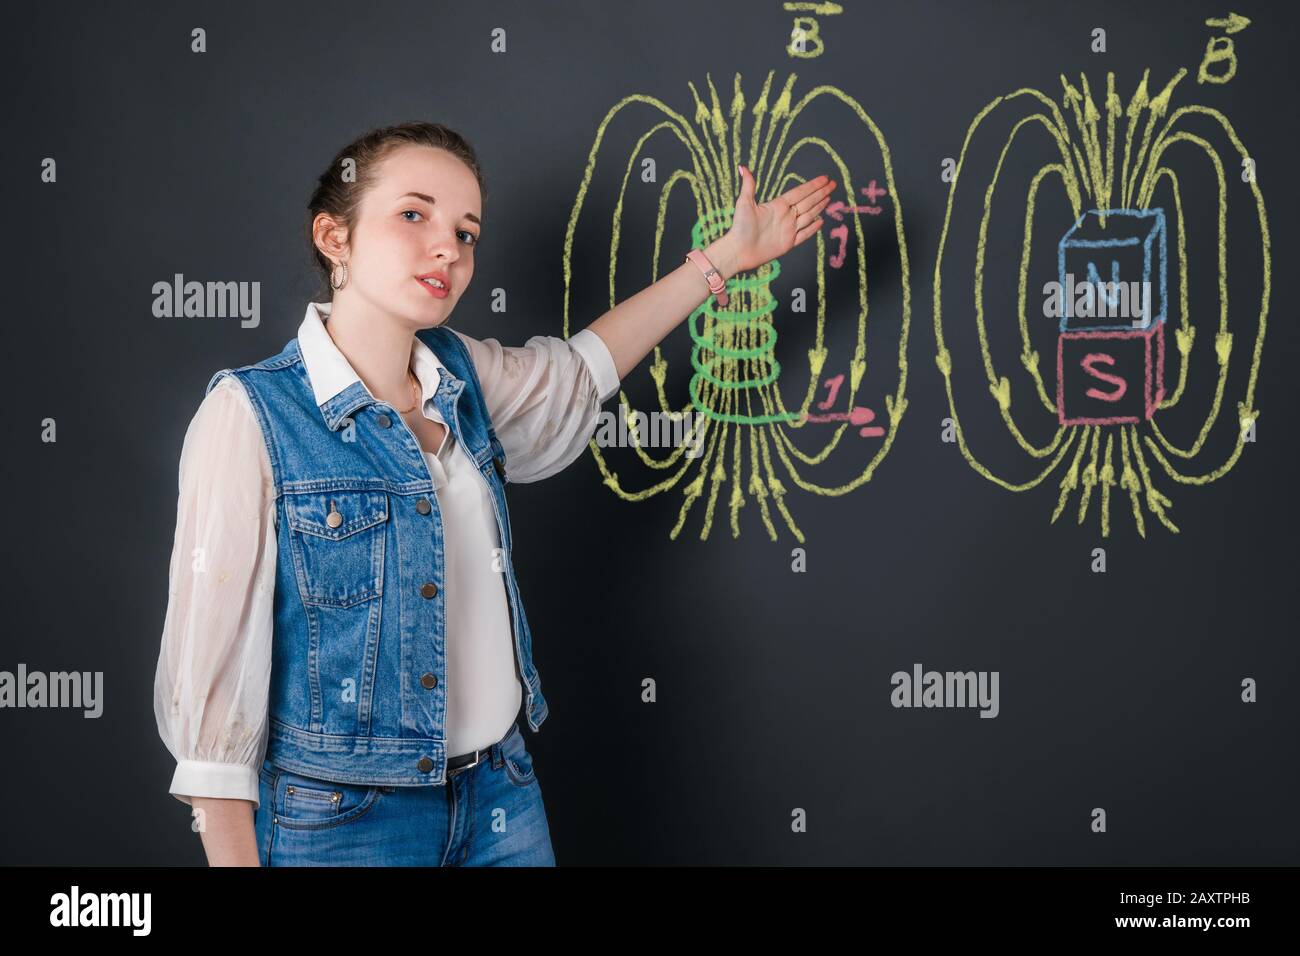 Jeune professeur de physique de femme parle des champs magnétiques, expliquant le sujet à partir de photos en couleur avec craie sur un tableau noir Banque D'Images